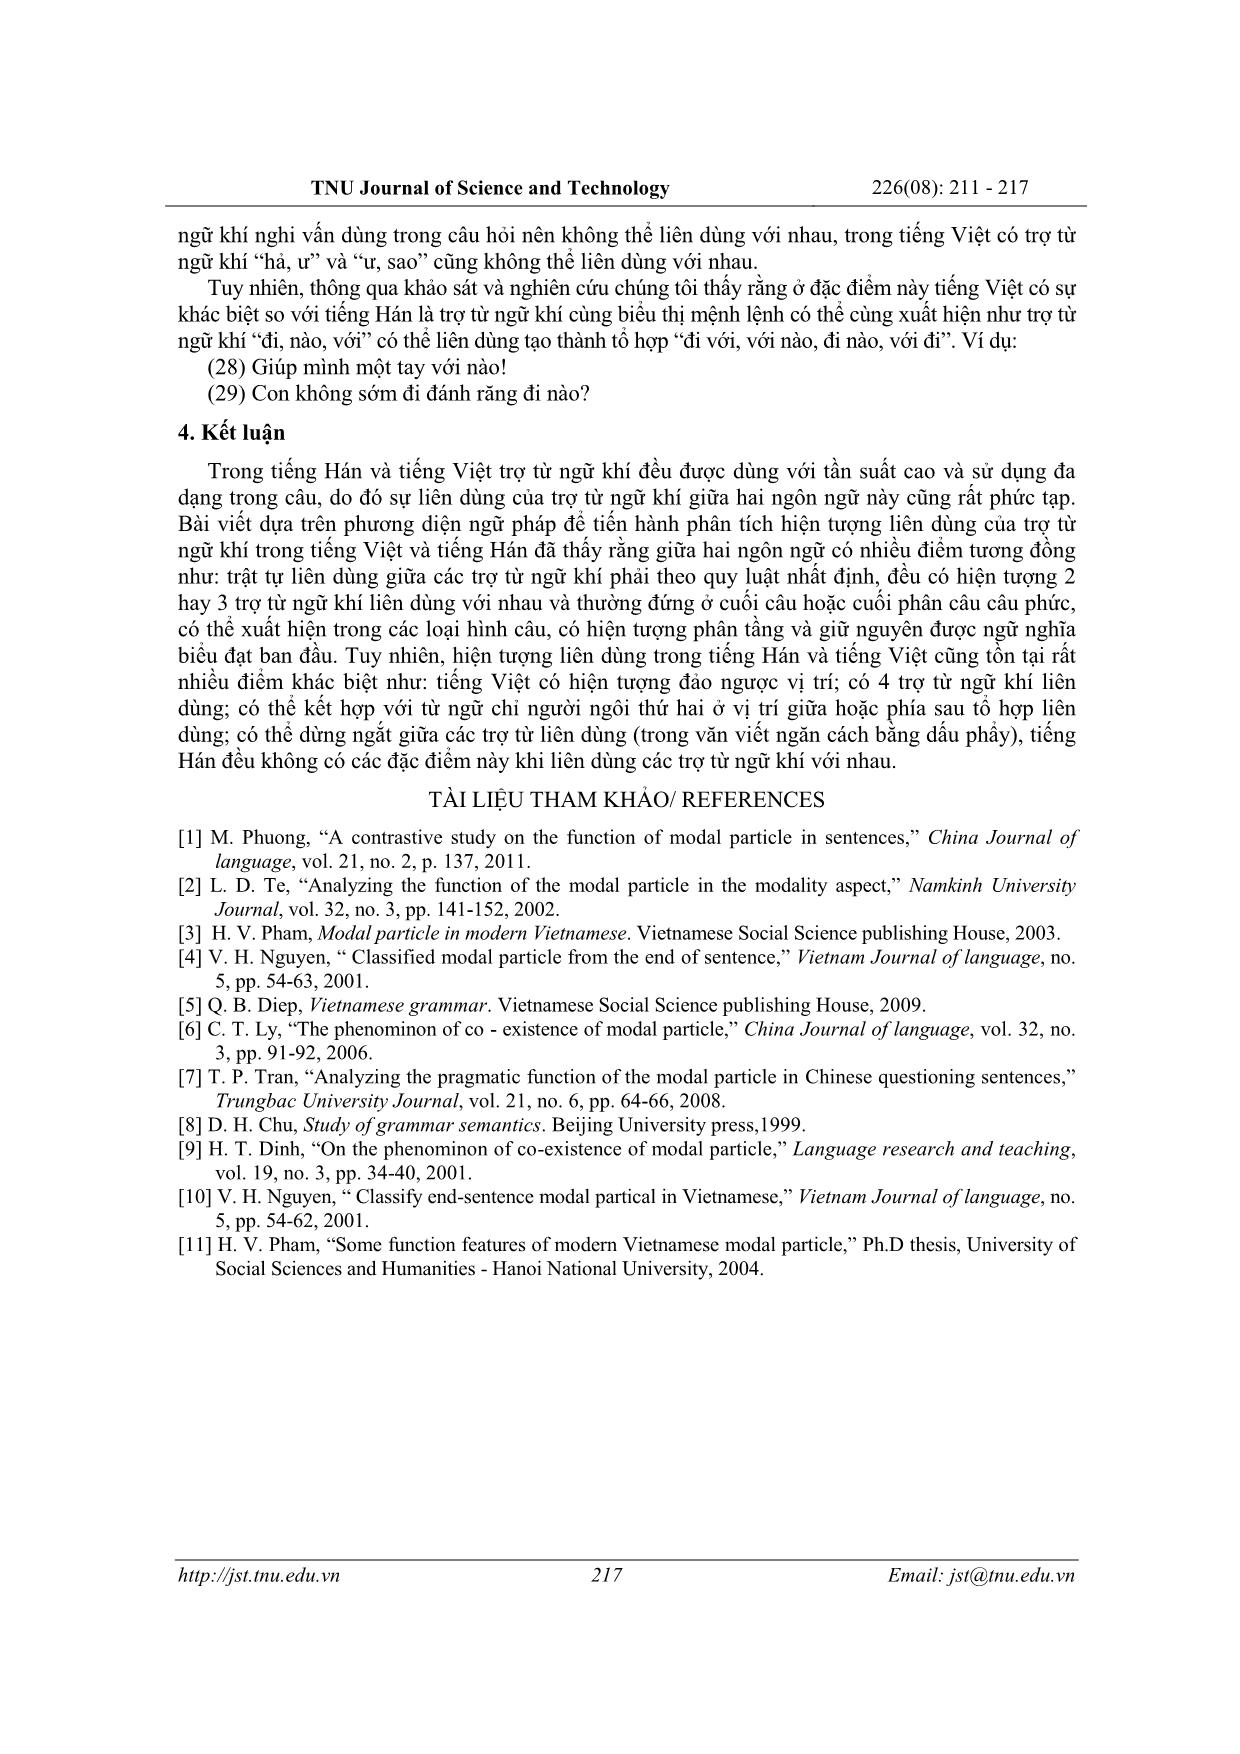 So sánh hiện tượng liên dùng của trợ từ ngữ khí trong tiếng Hán và tiếng Việt trang 7